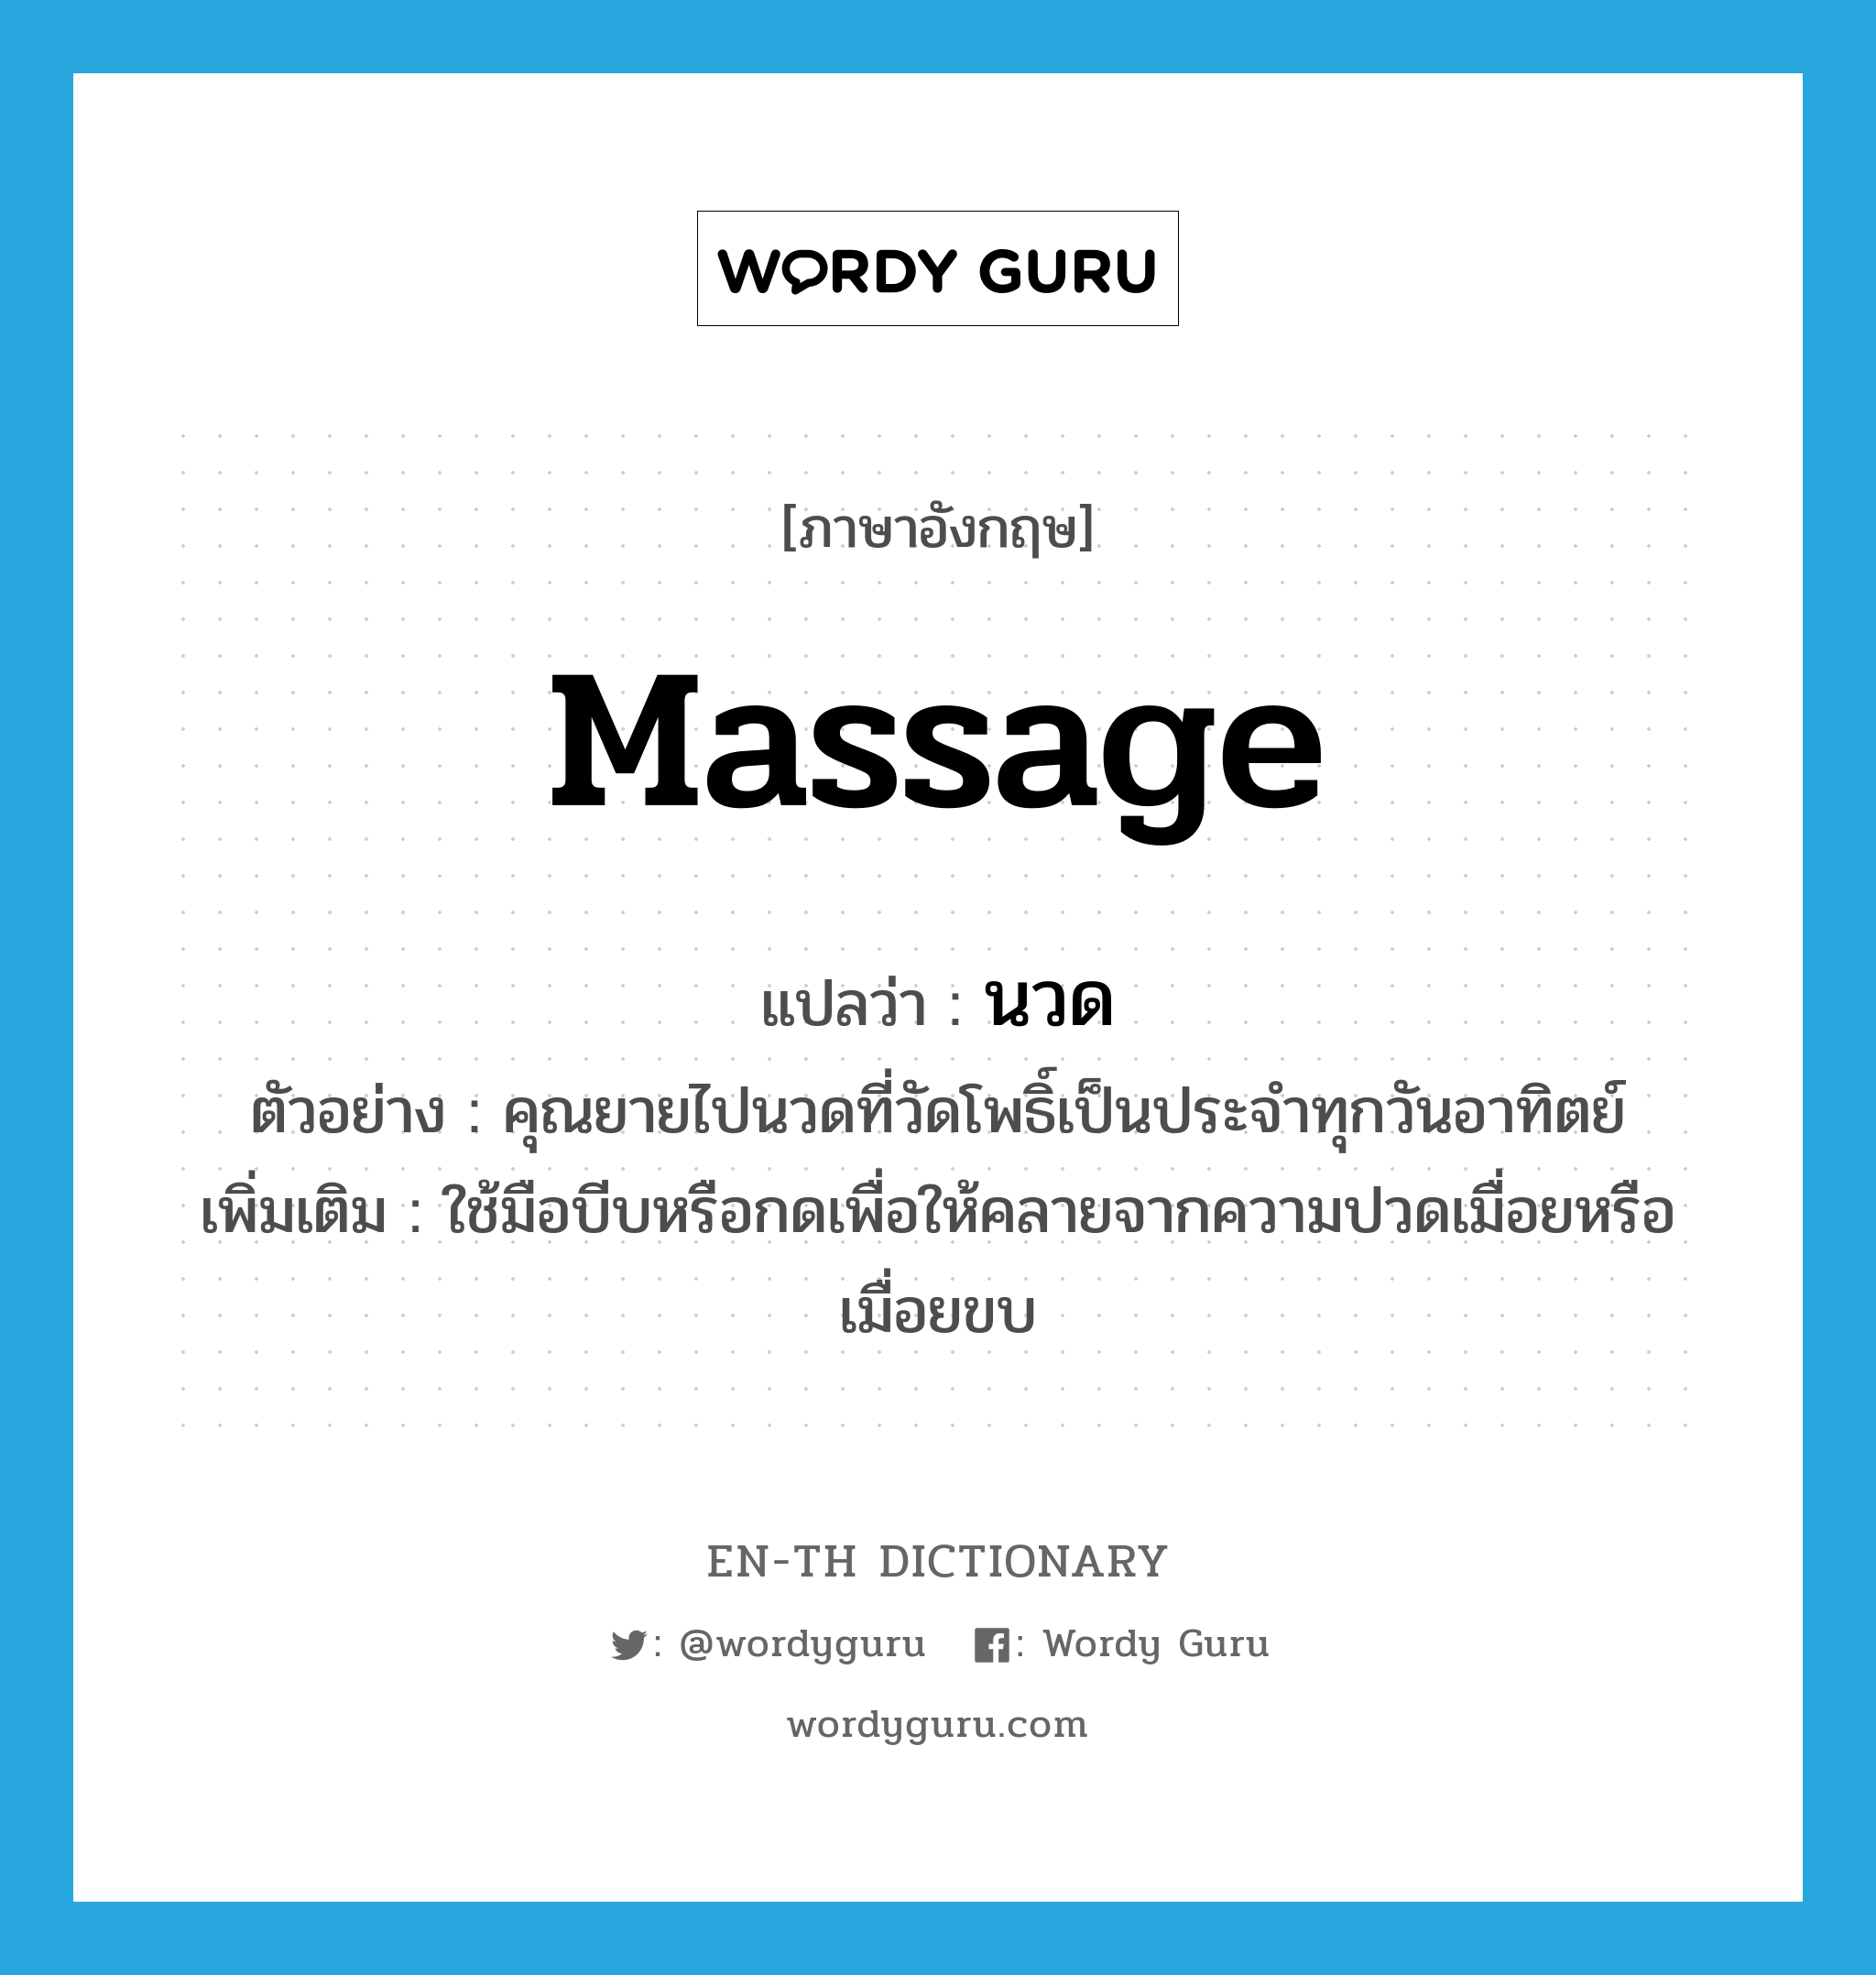 massage แปลว่า?, คำศัพท์ภาษาอังกฤษ massage แปลว่า นวด ประเภท V ตัวอย่าง คุณยายไปนวดที่วัดโพธิ์เป็นประจำทุกวันอาทิตย์ เพิ่มเติม ใช้มือบีบหรือกดเพื่อให้คลายจากความปวดเมื่อยหรือเมื่อยขบ หมวด V